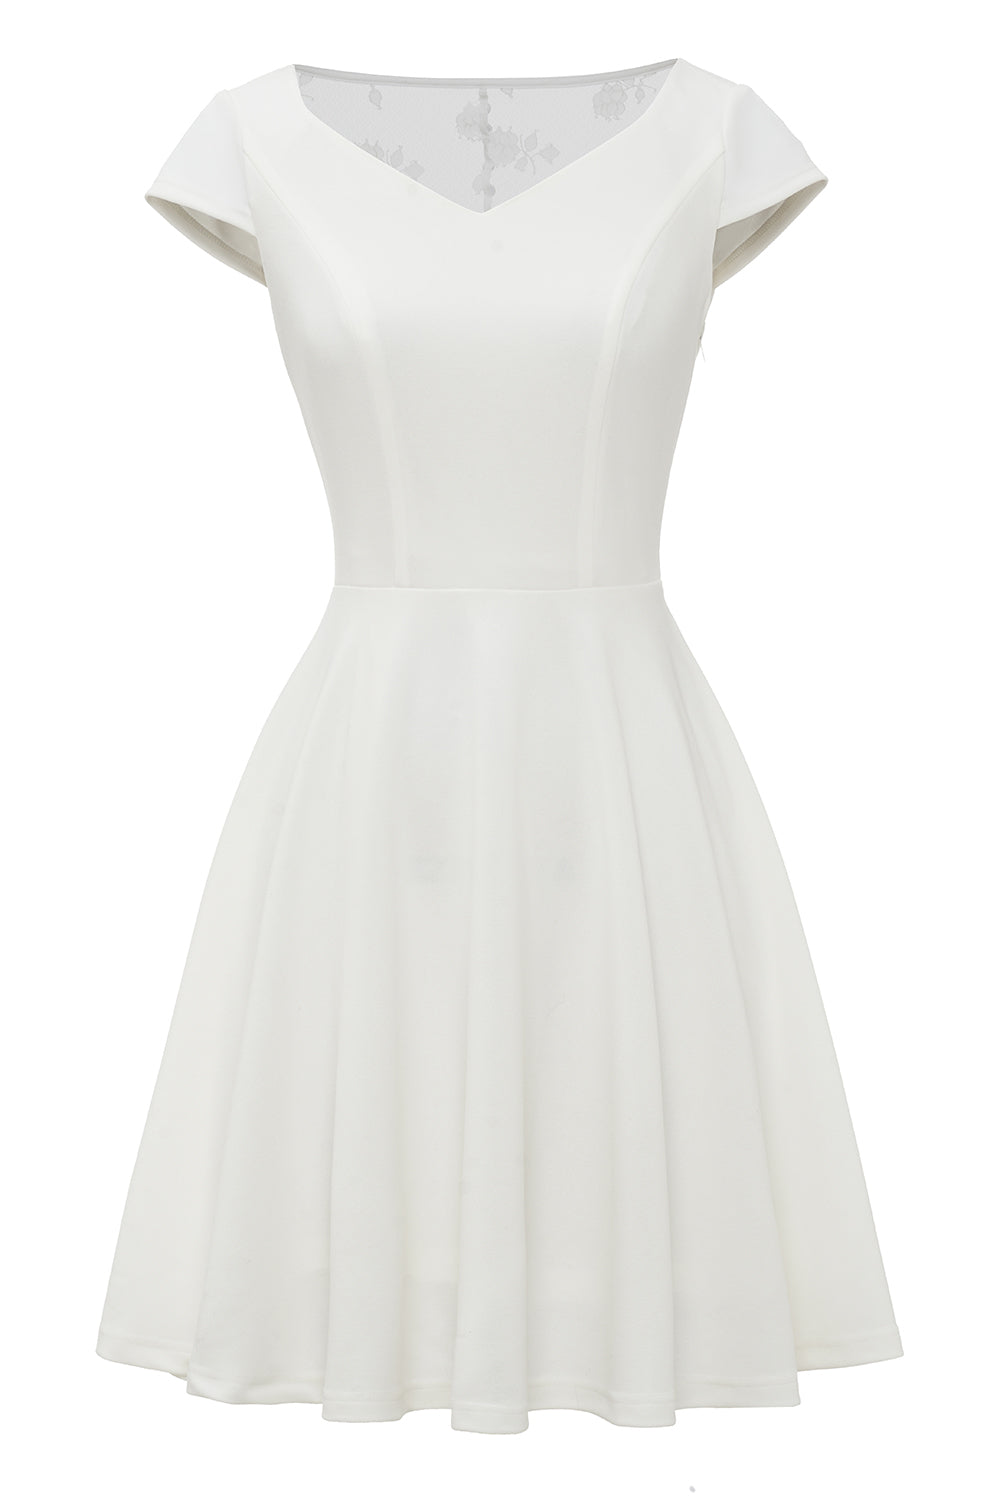 Biała koronkowa sukienka vintage